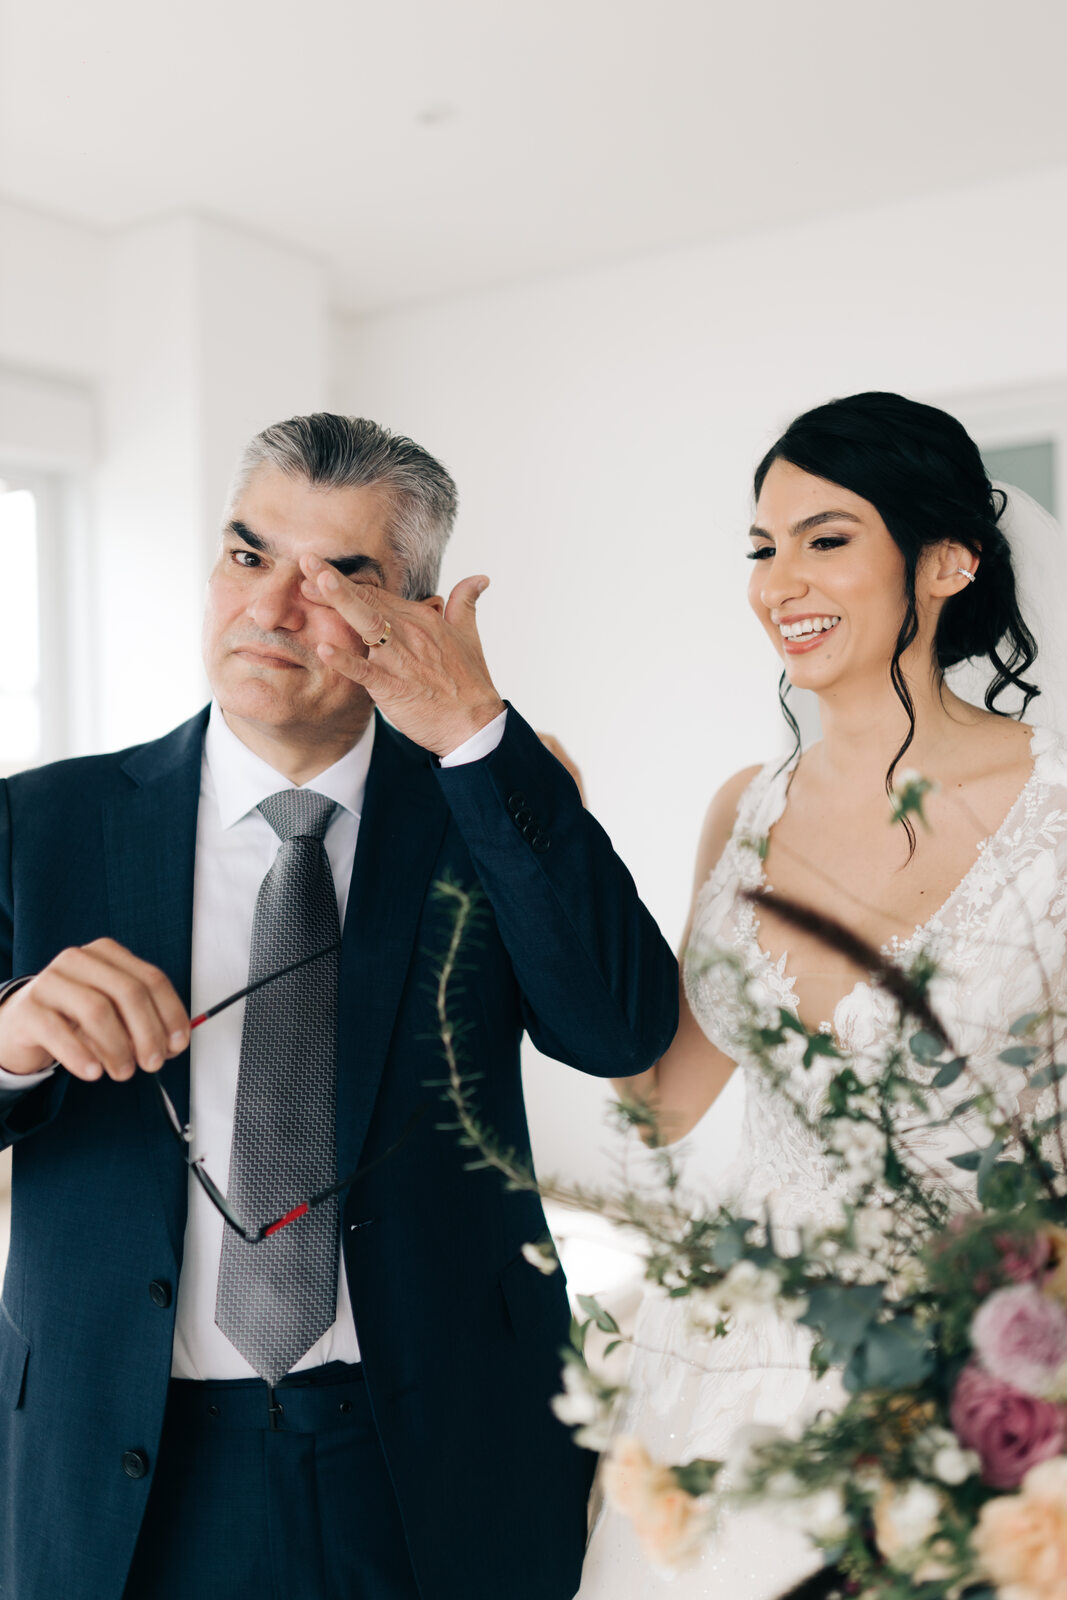 pai da noiva com terno azule gravata cinza emocionado durnate o first look com a noiva